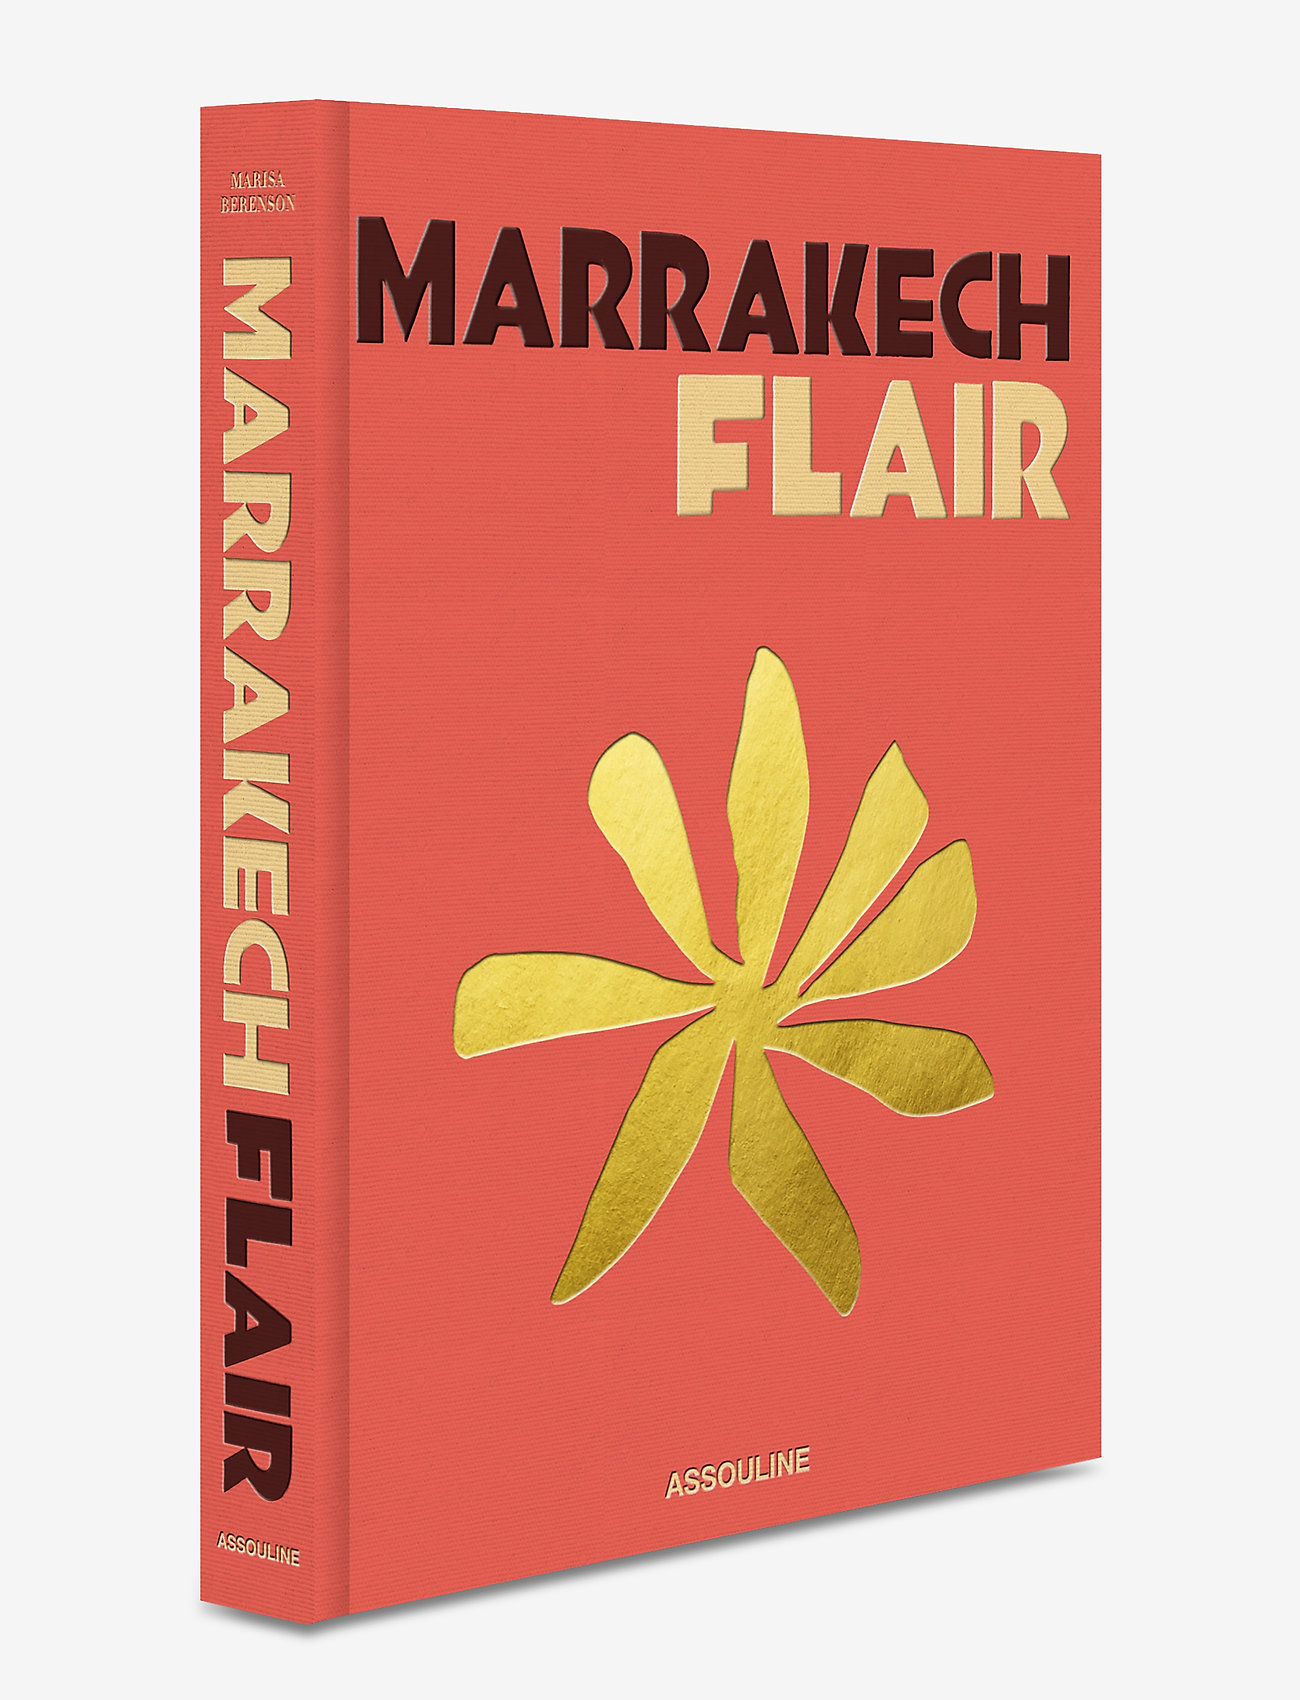 New Mags - Marrakech Flair - geburtstagsgeschenke - peach/gold - 1